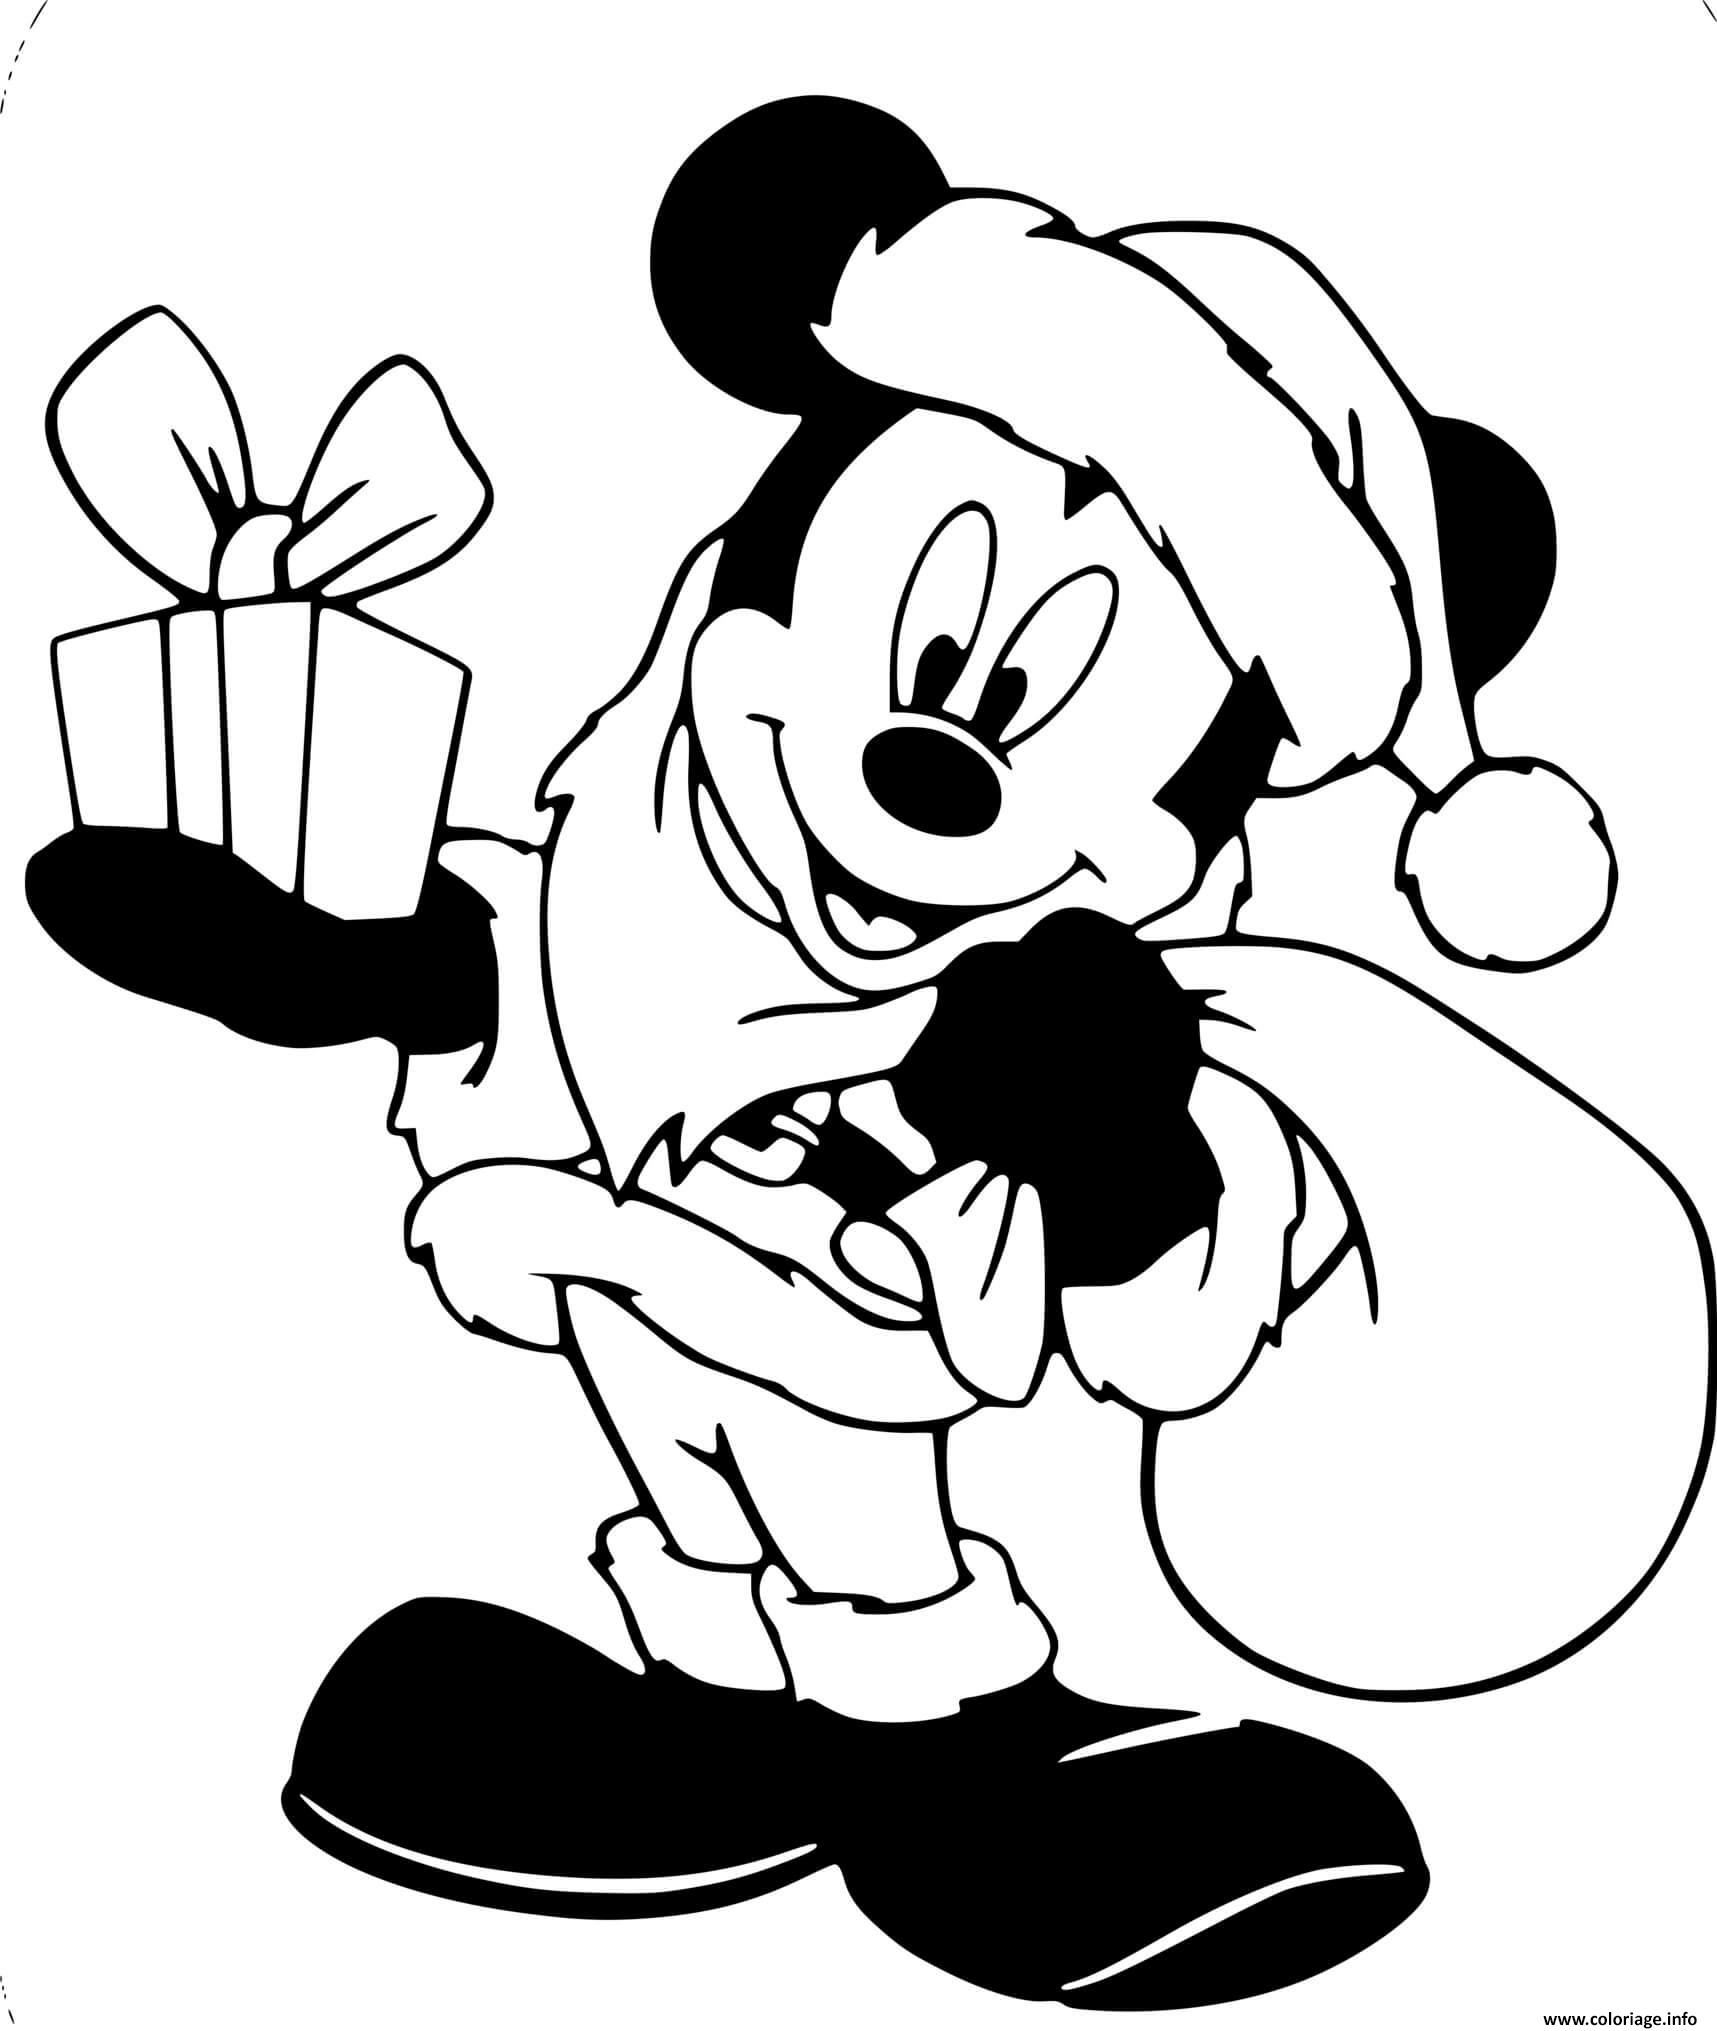 Dessin Mickey Mouse as Santa Claus Coloriage Gratuit à Imprimer